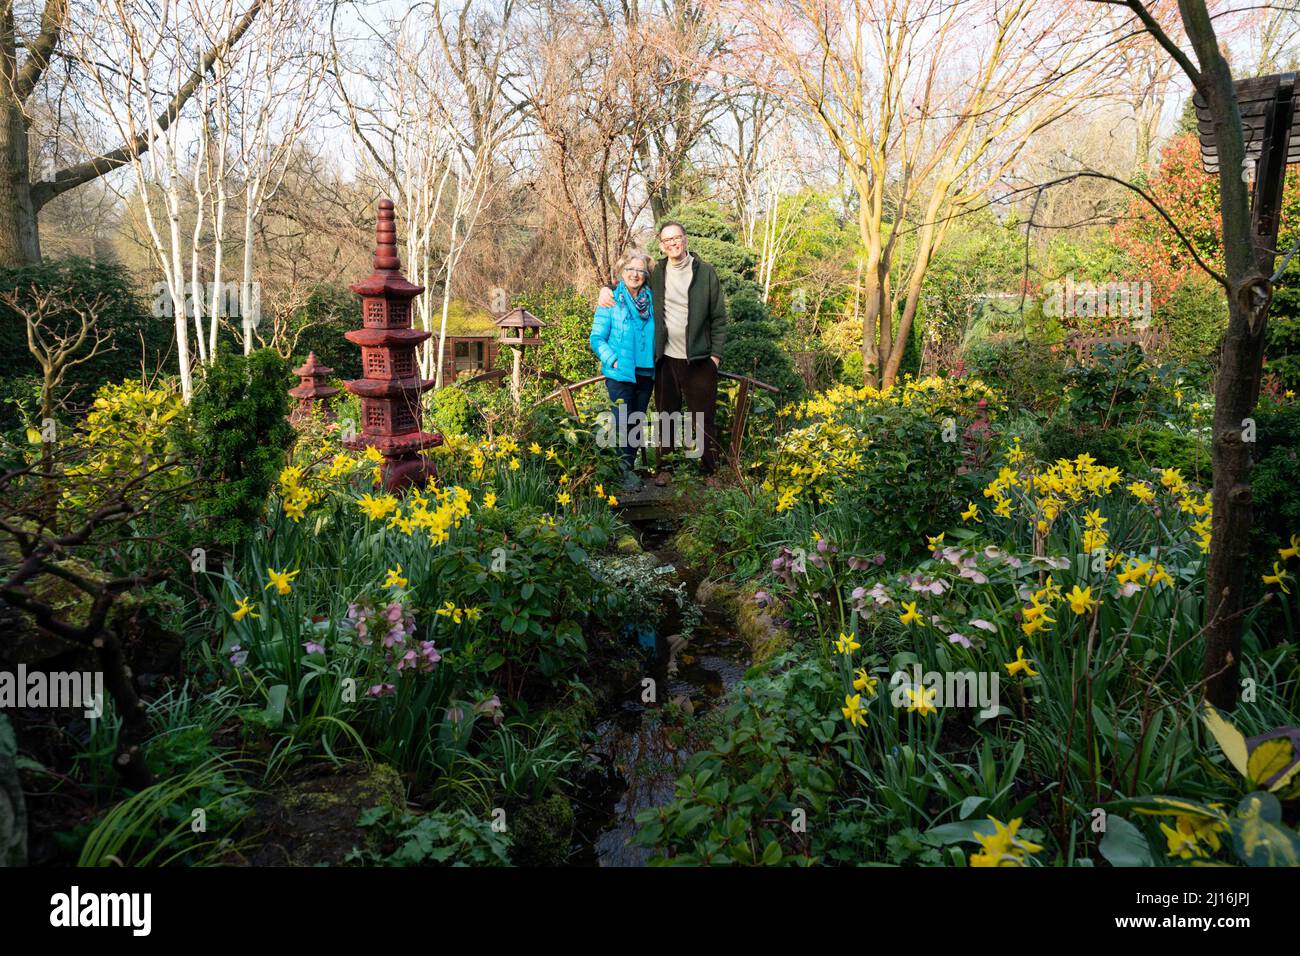 Das Rentnerpaar Tony und Marie Newton in ihrem vier Jahreszeiten Garten, als der Frühling in ihrem Haus in Walsall, West Midlands, beginnt. Bilddatum: Mittwoch, 23. März 2022. Stockfoto